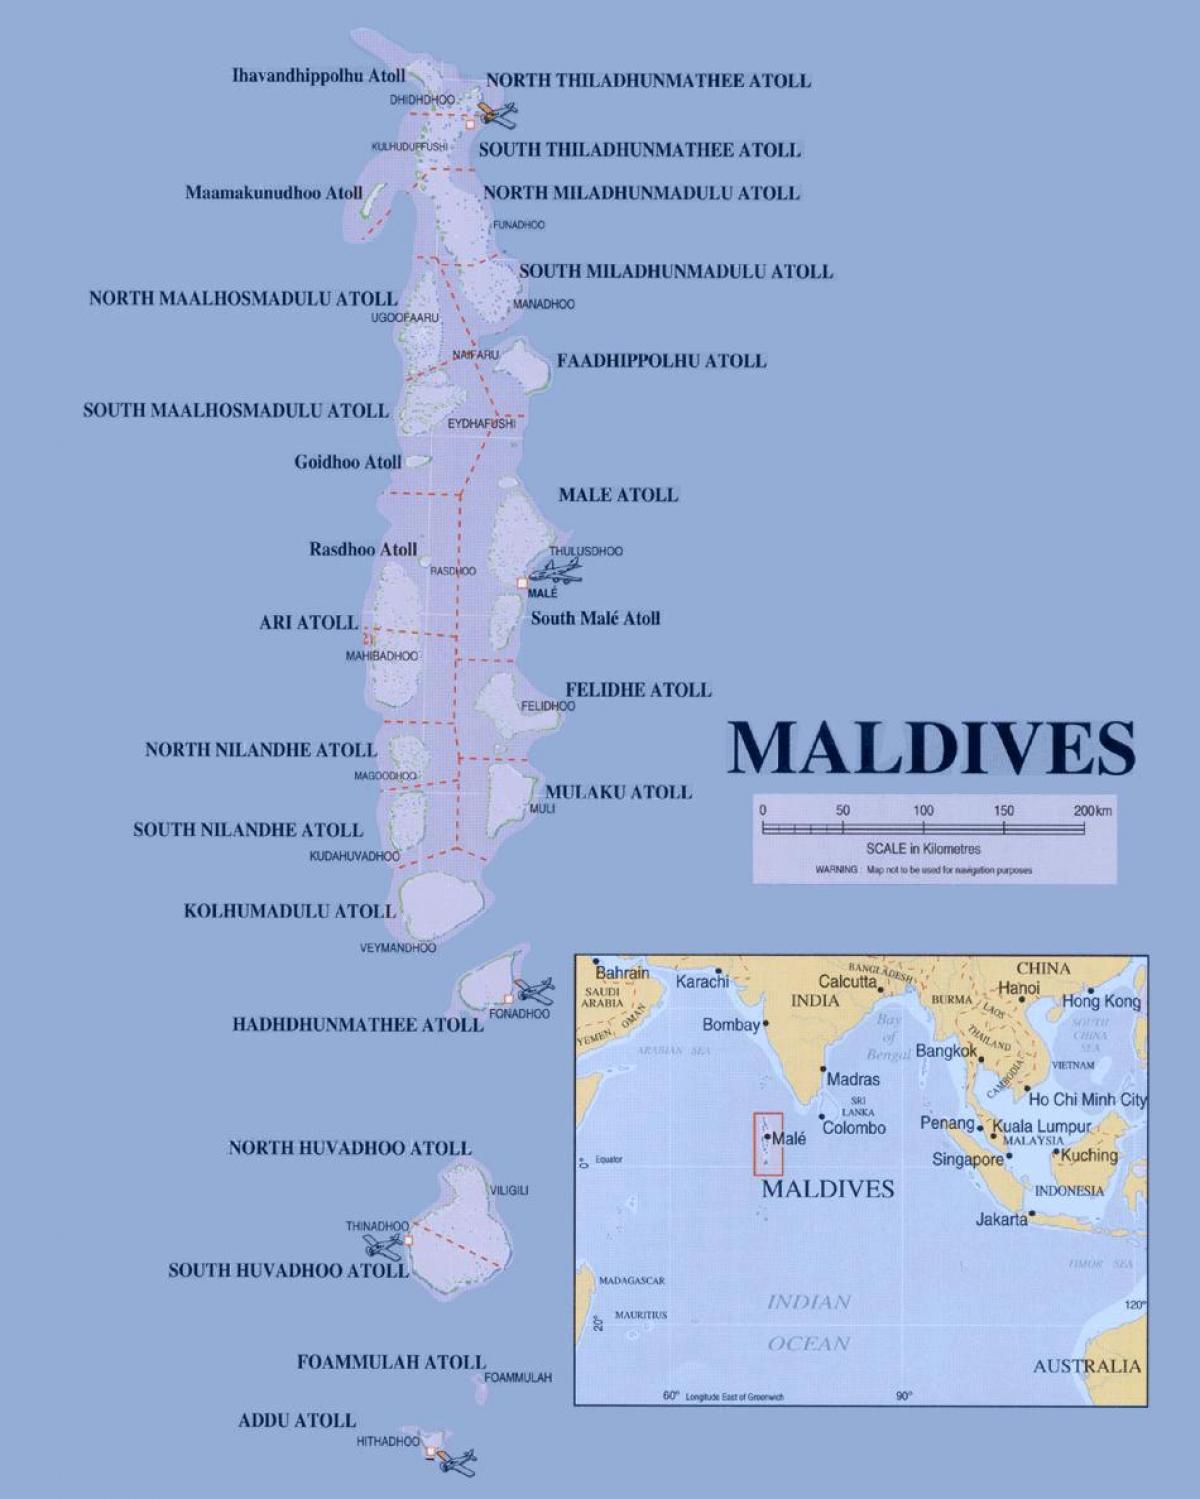 hartë që tregon maldivet